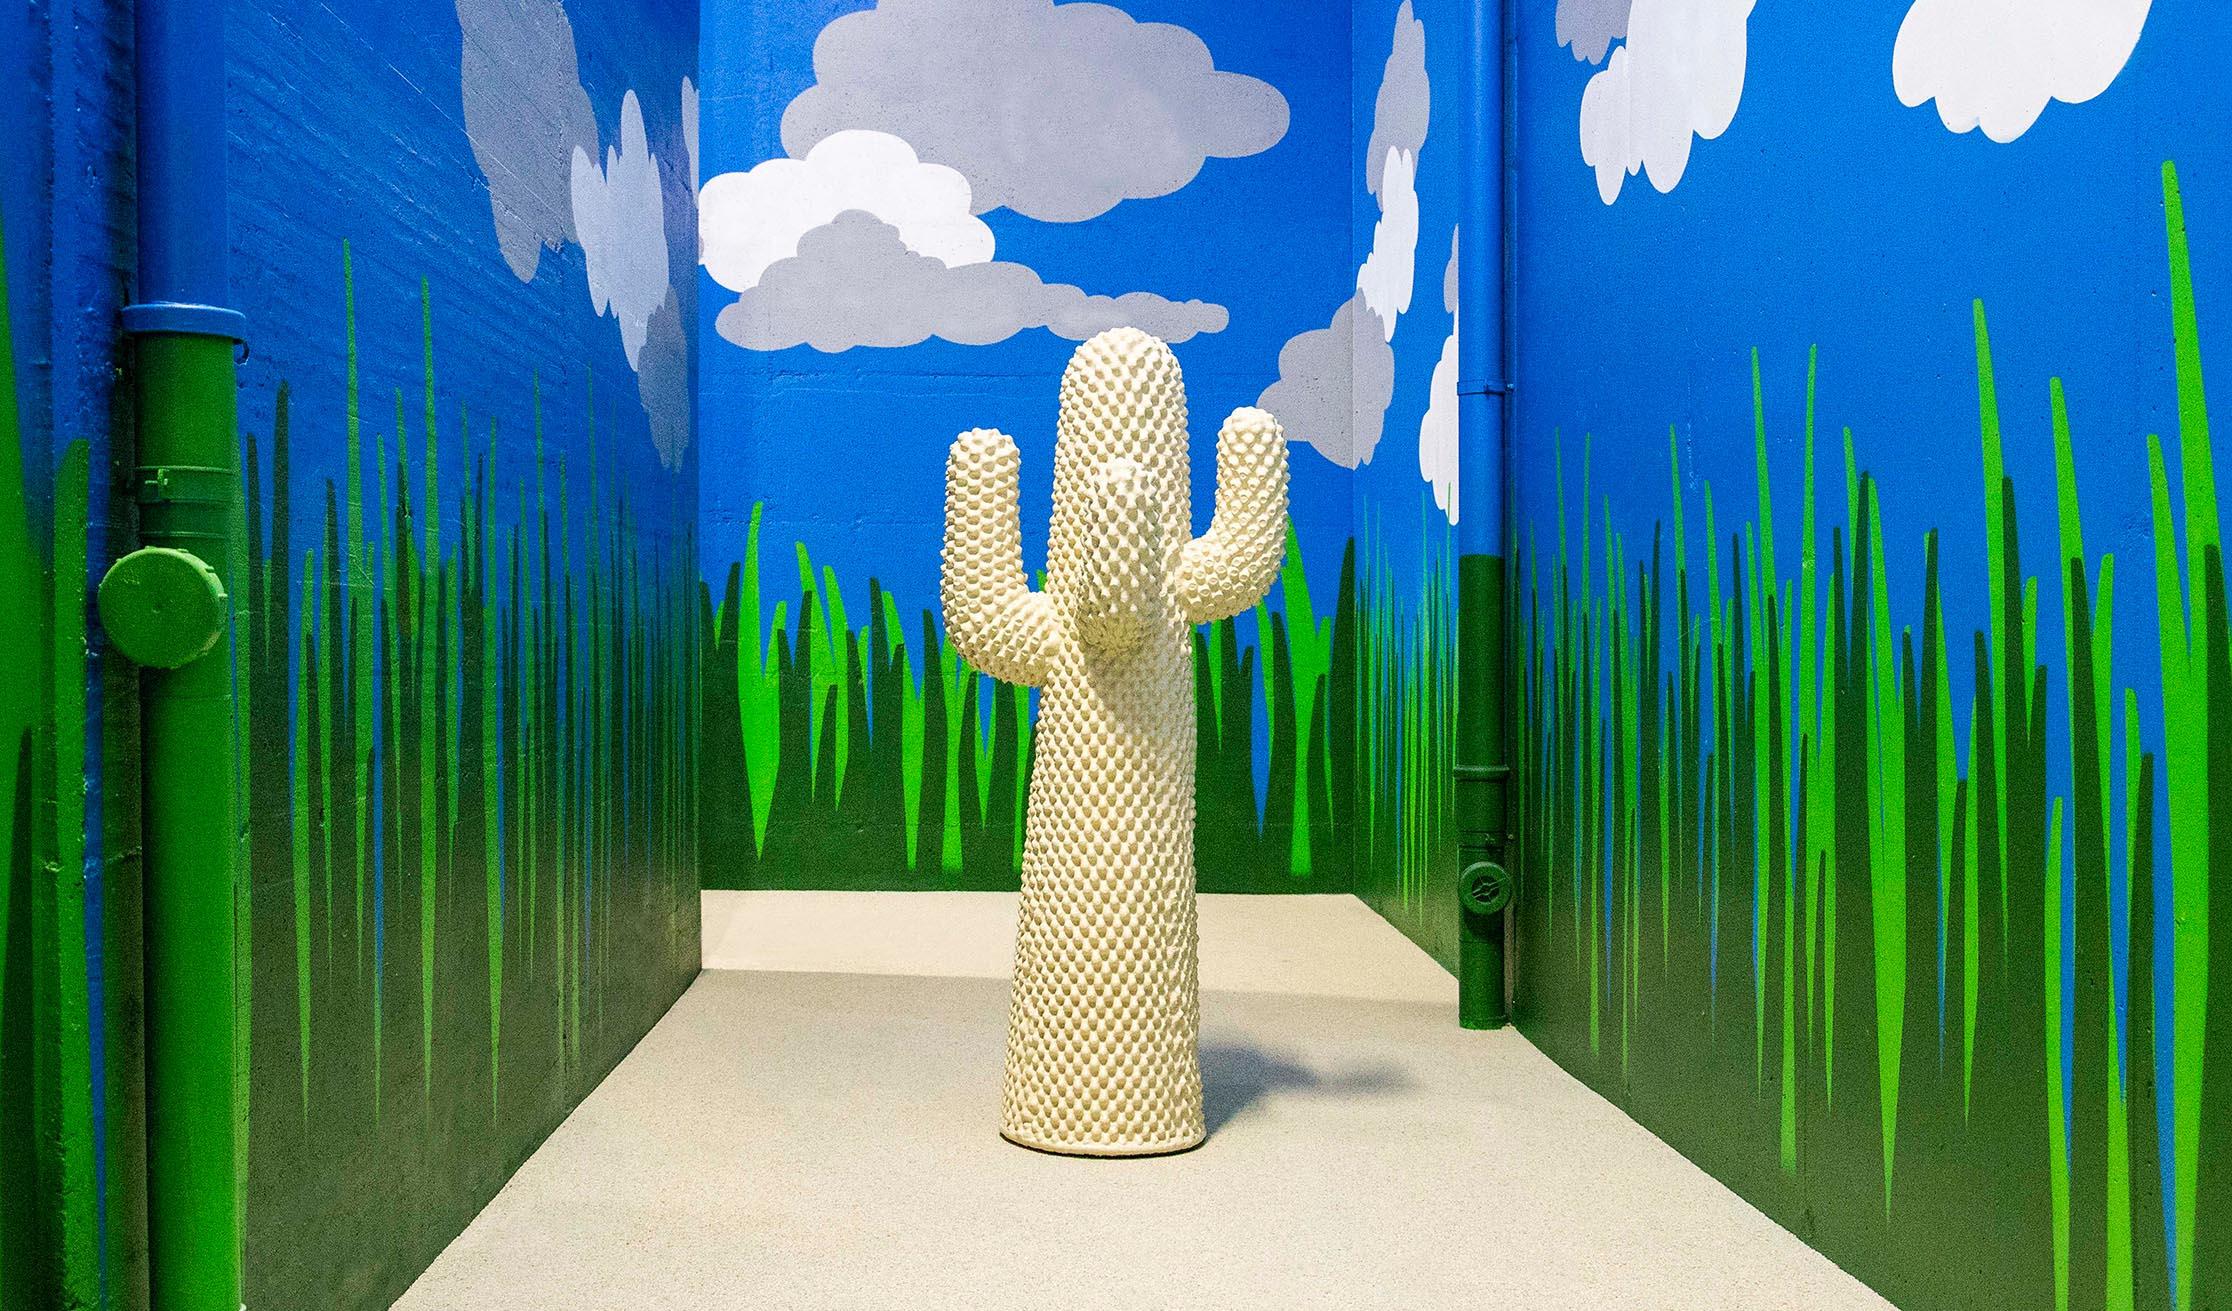 Objet de plusieurs interprétations, libres et souvent ambiguës, Cactus est l'icône du design italien qui a révolutionné le paysage domestique, en subvertissant les frontières entre espace intérieur et espace ouvert. Cactus est un totem ironique, qui